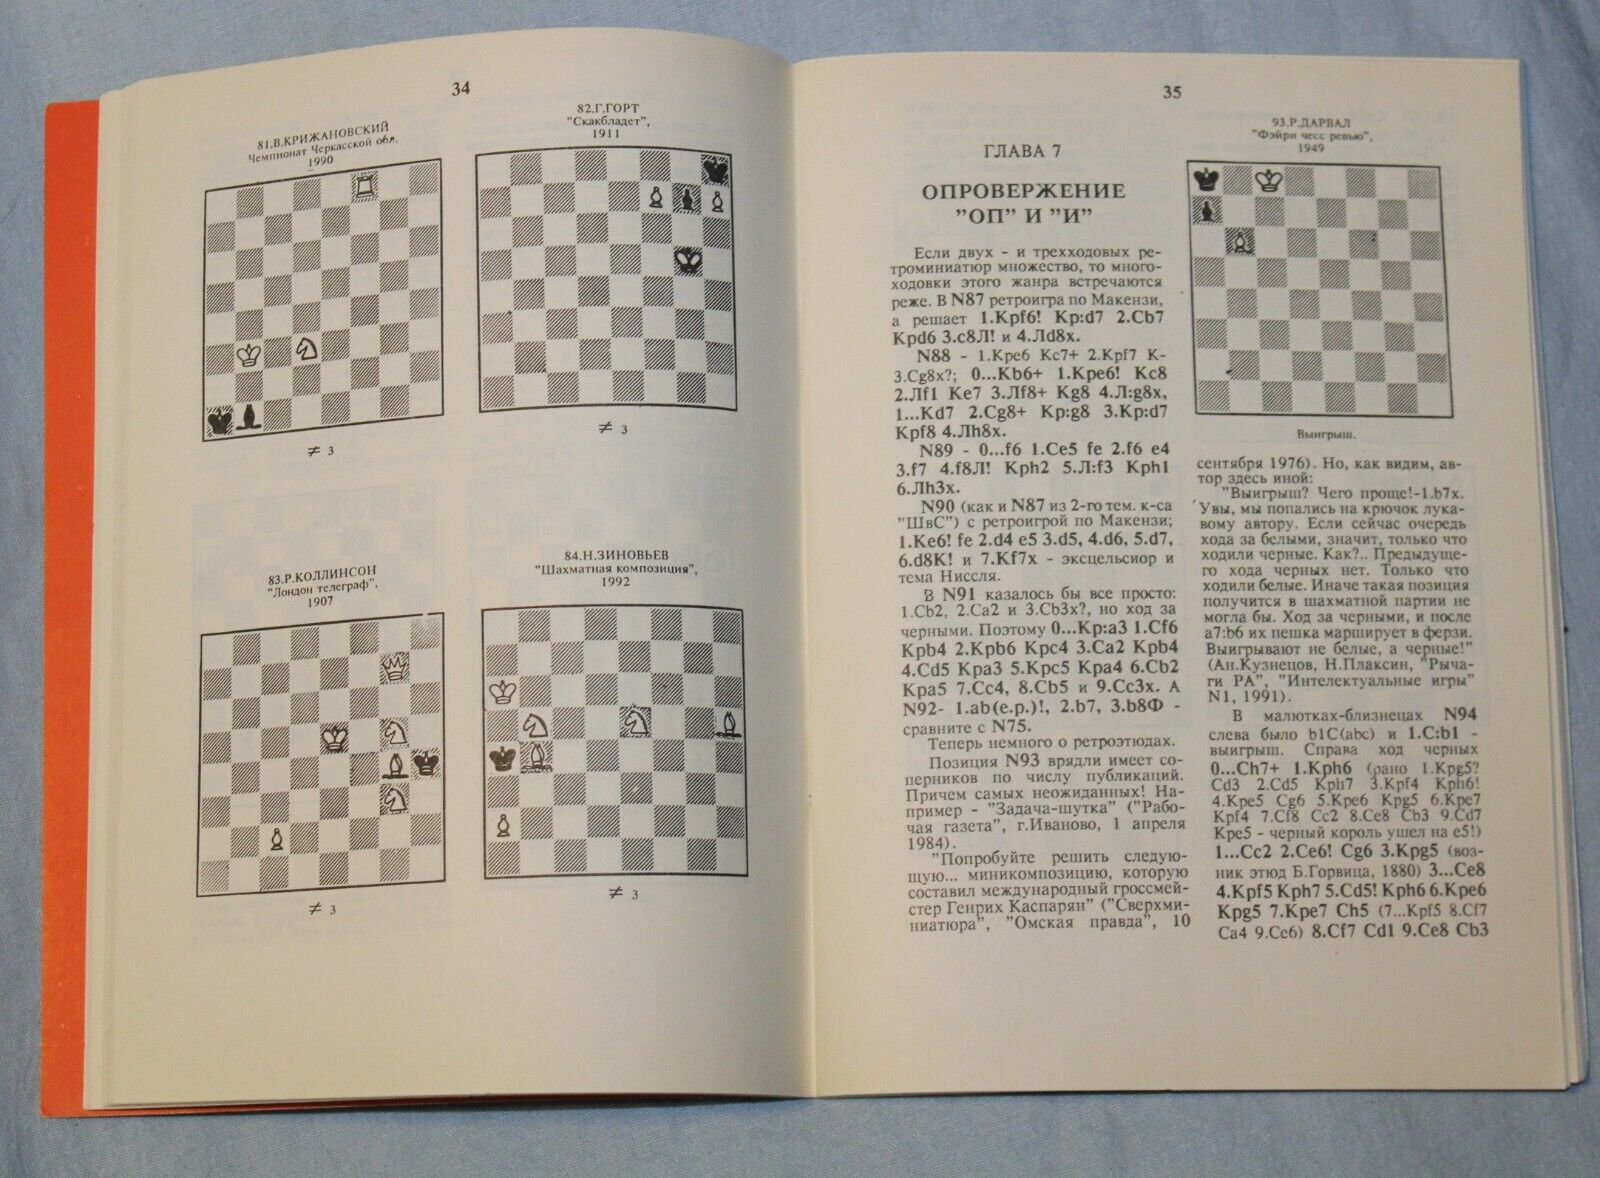 11204.Chess Problem Book: Plaksin Dashkovsky. Masters and mini-rhythms. Cherkassy 1993